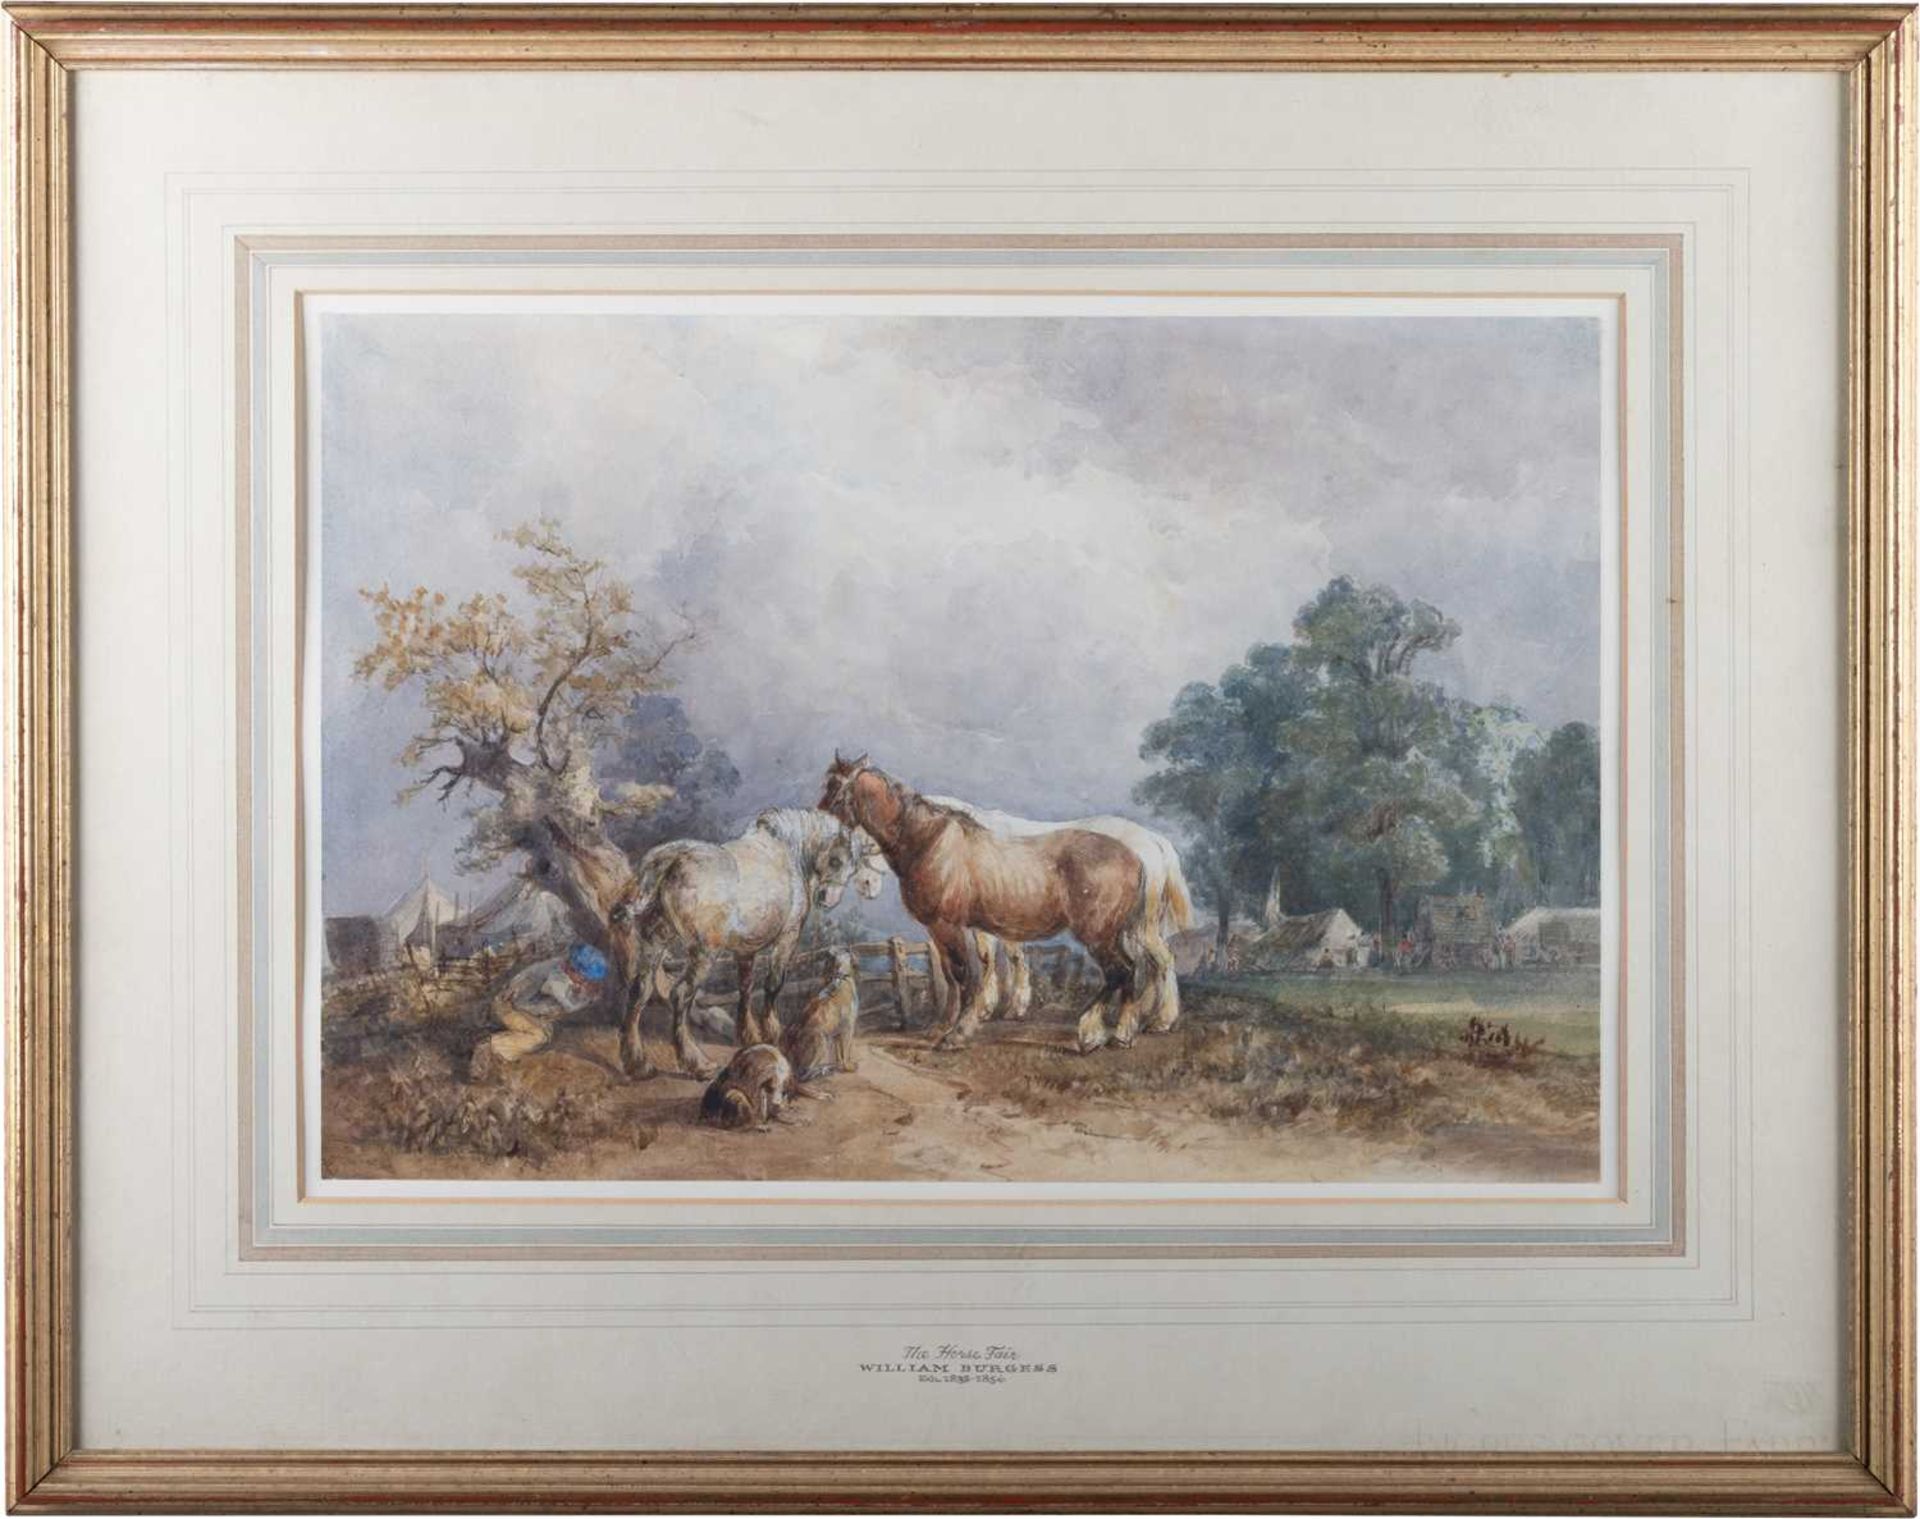 WILLIAM BURGESS OF DOVER (1805-1861) THE HORSE FAIR - Image 2 of 4